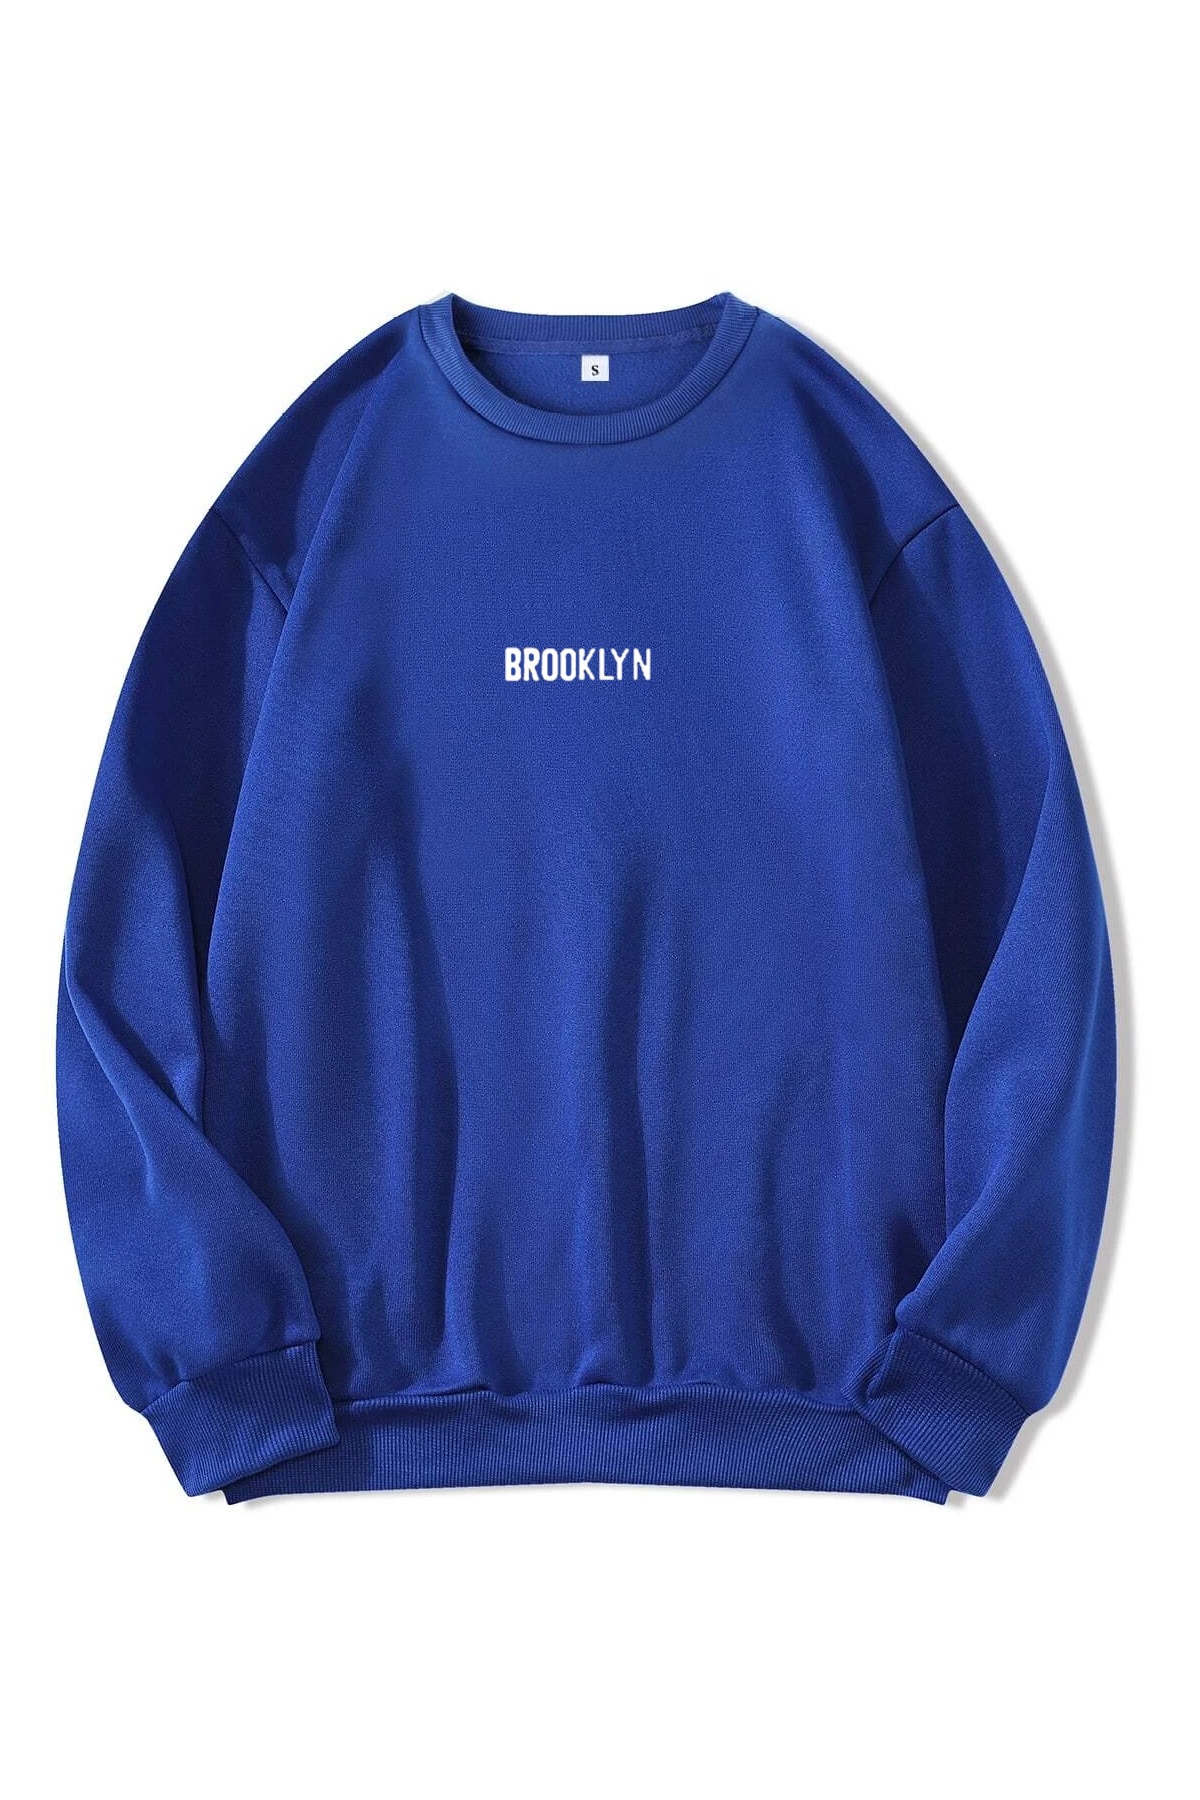 MODAGEN Unisex Brooklyn Baskılı Sax Mavi Oversize Sweatshirt